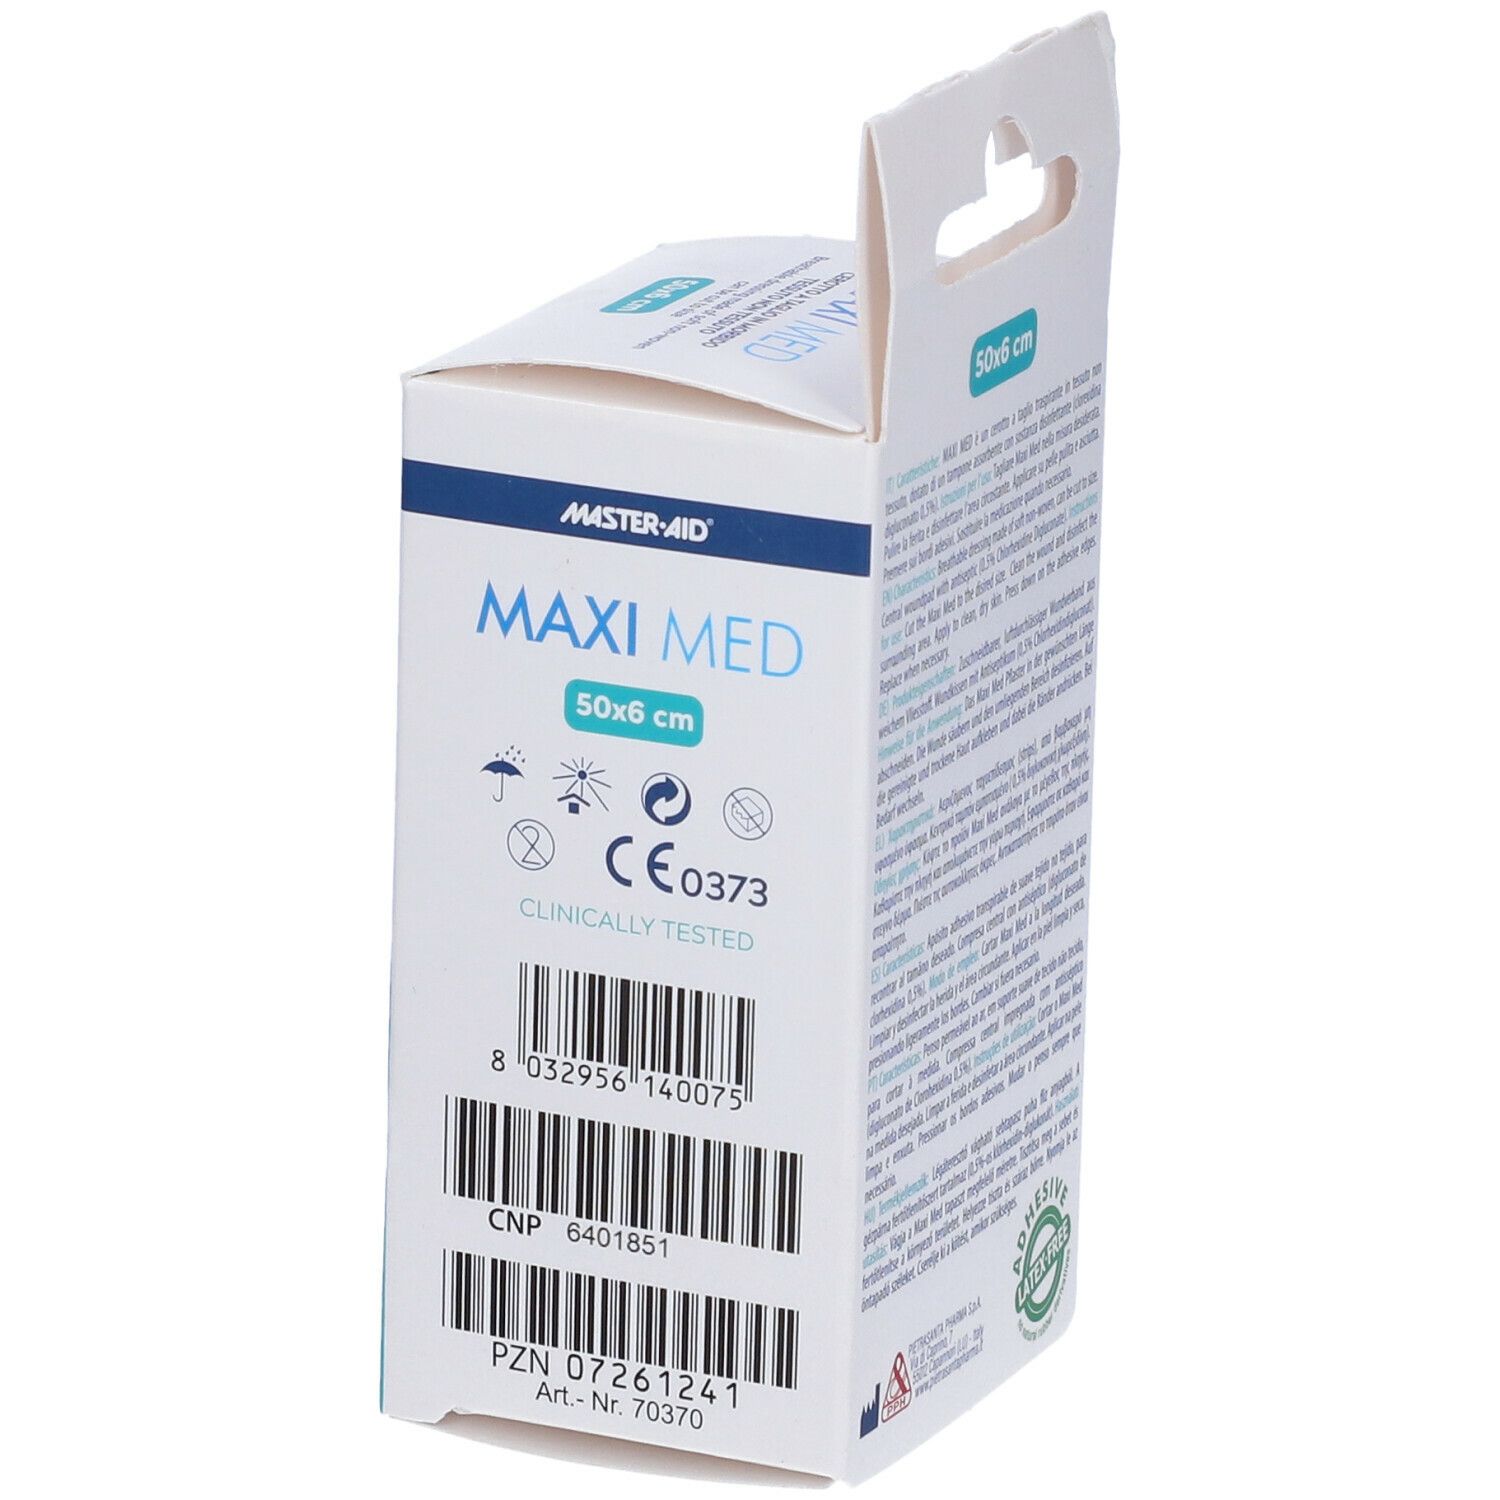 MasterAid® Maxi Med Cerotto a Taglio 50 cm x 6 cm